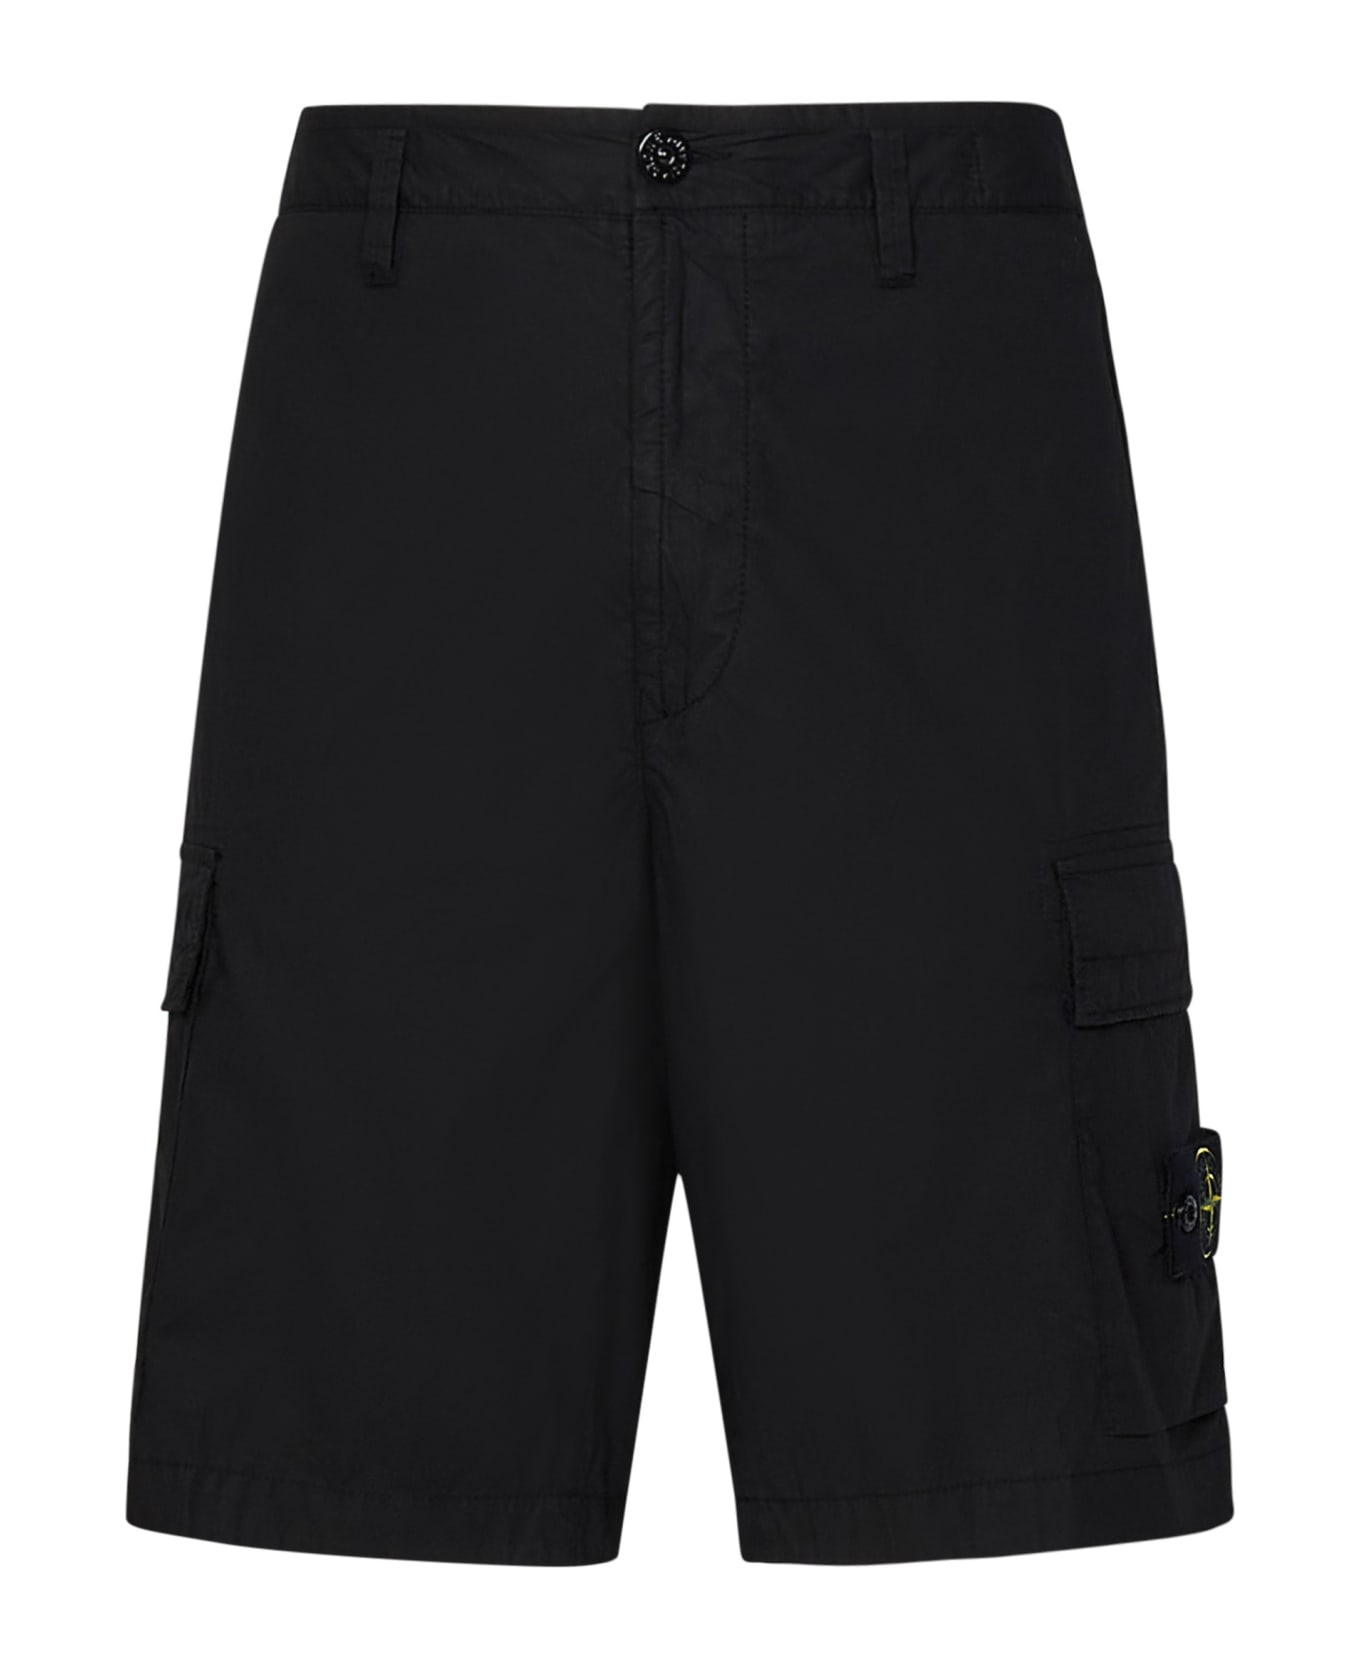 Stone Island Shorts - Black